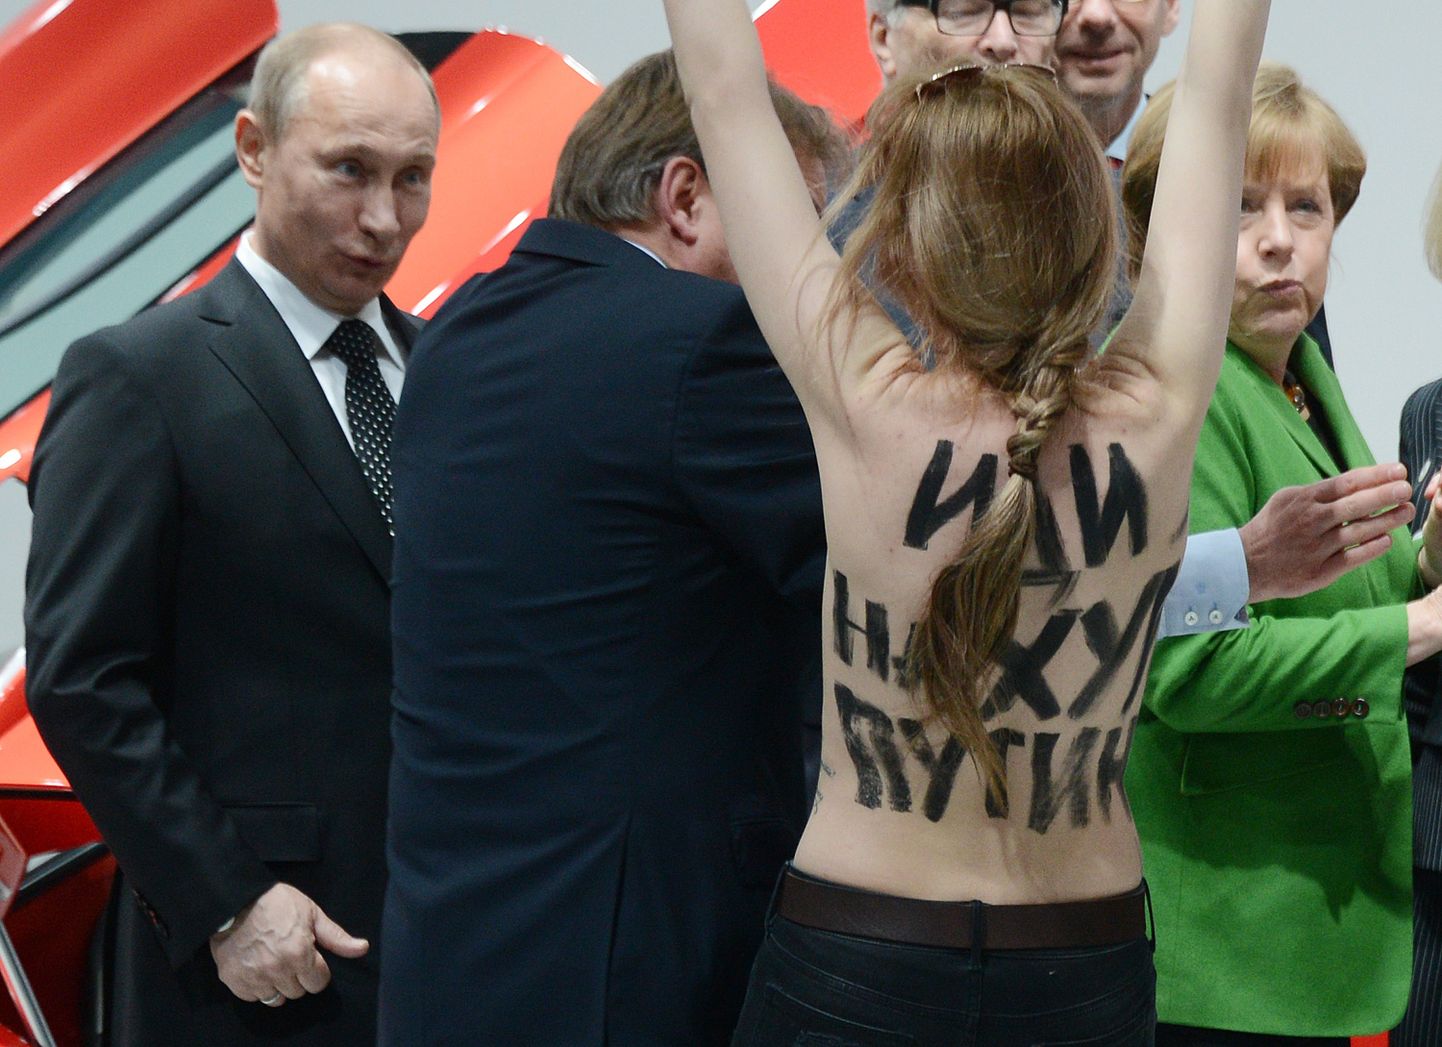 Feministliku rühmituse Femen palja ülakehaga liige hurjutas 2013. aastal Vladimir Putinit, kui too oli Saksamaal visiidil.